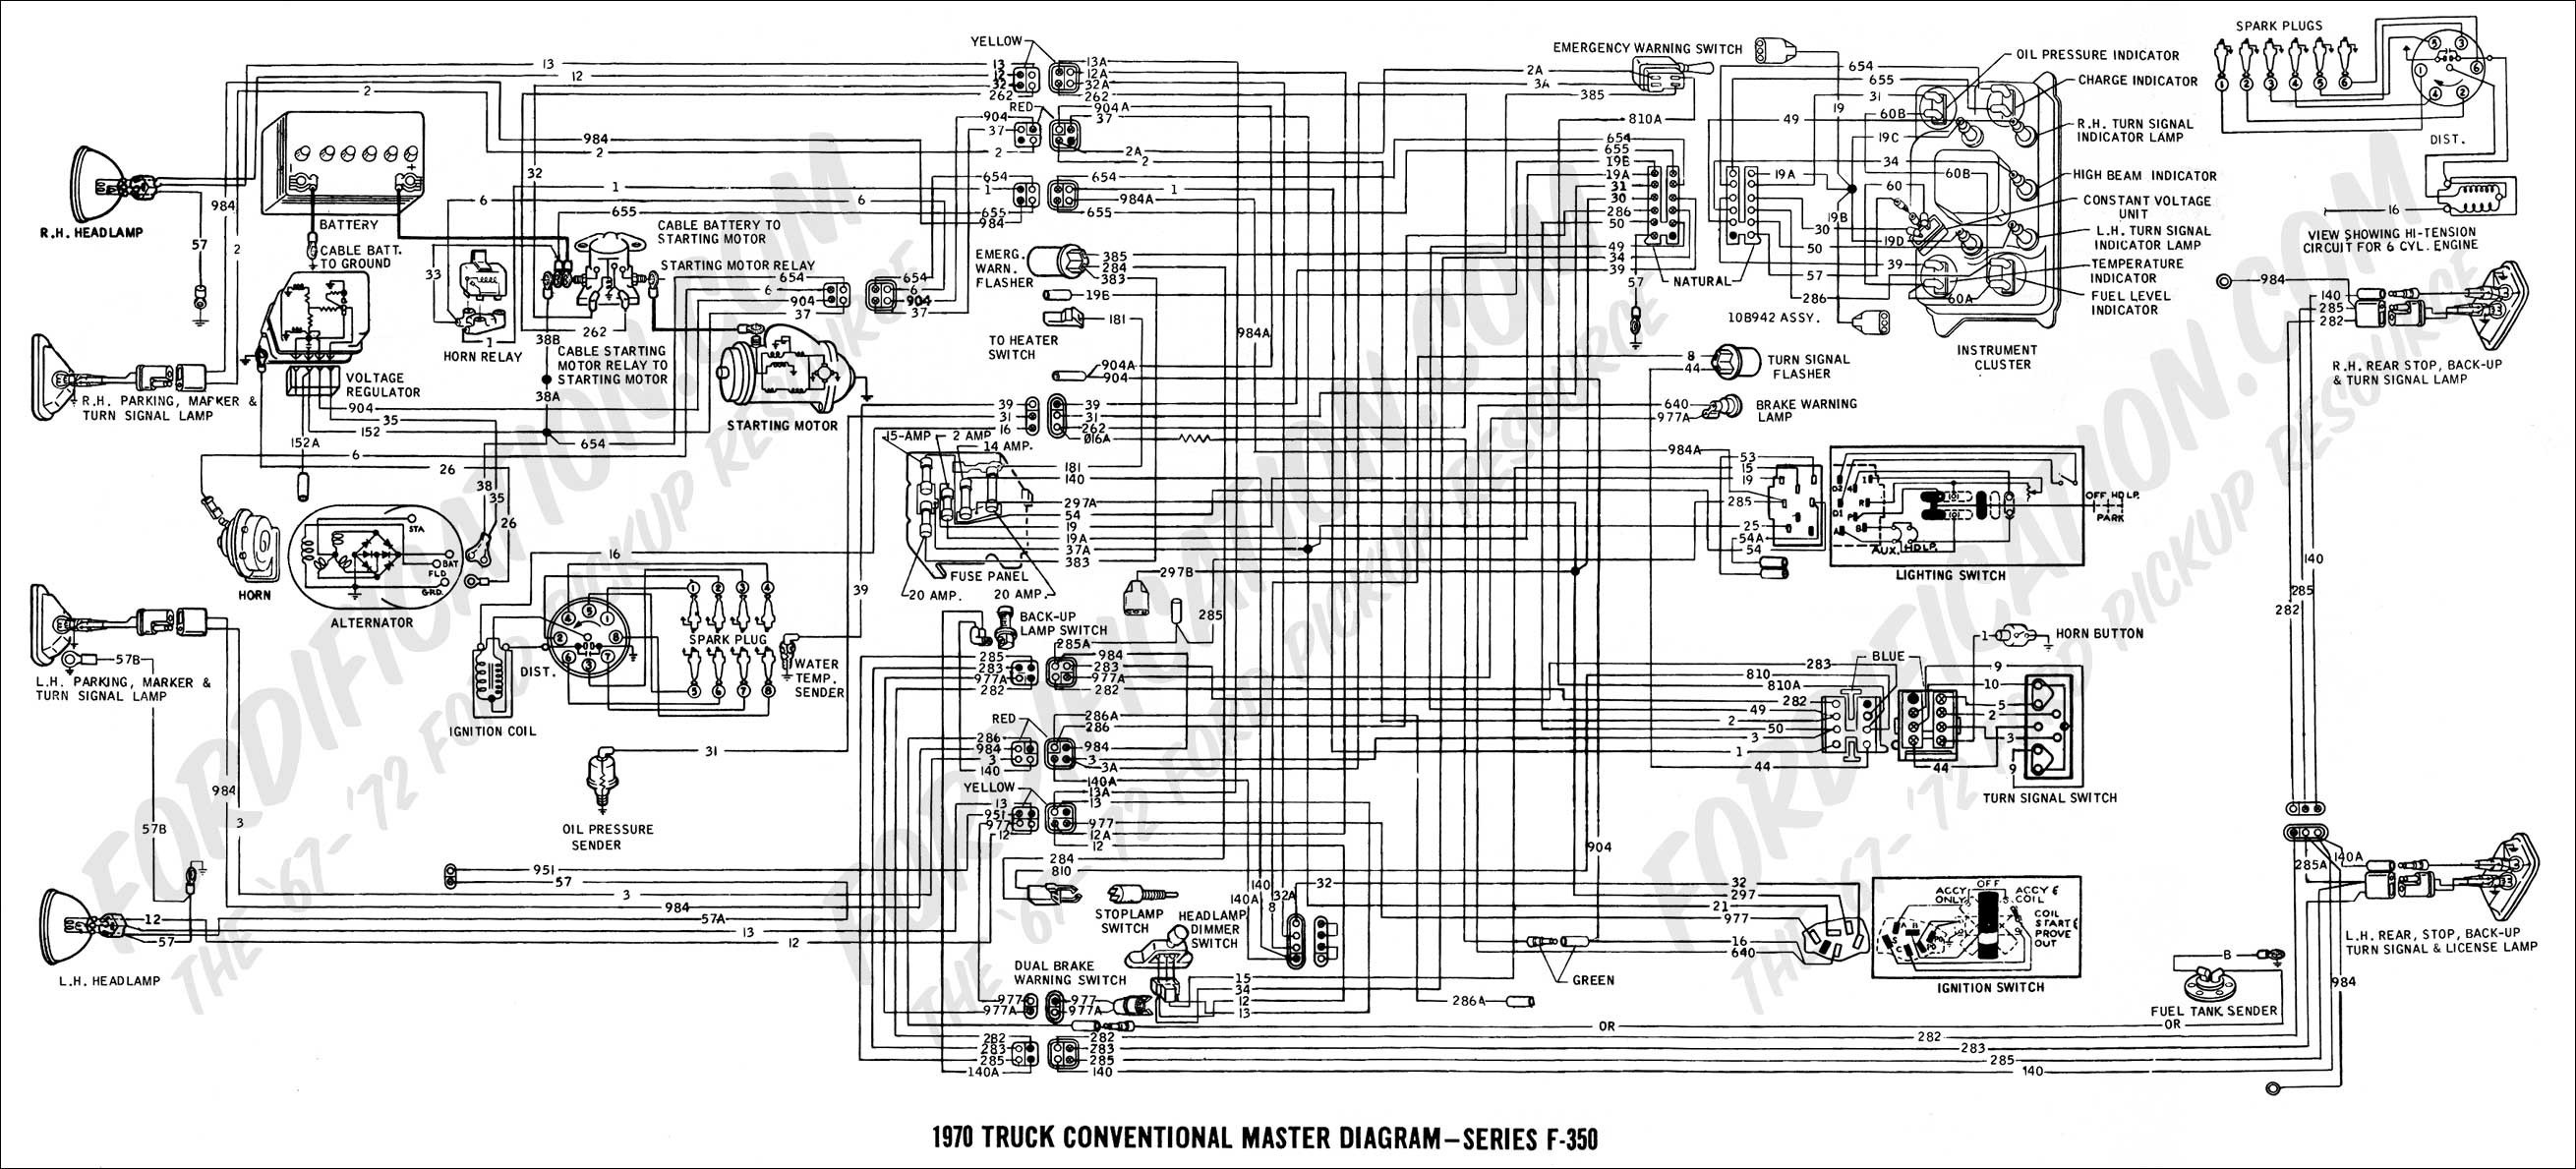 1993 ford F150 Wiring Diagram 2006 ford F150 Wiring Diagram Image Of 1993 ford F150 Wiring Diagram